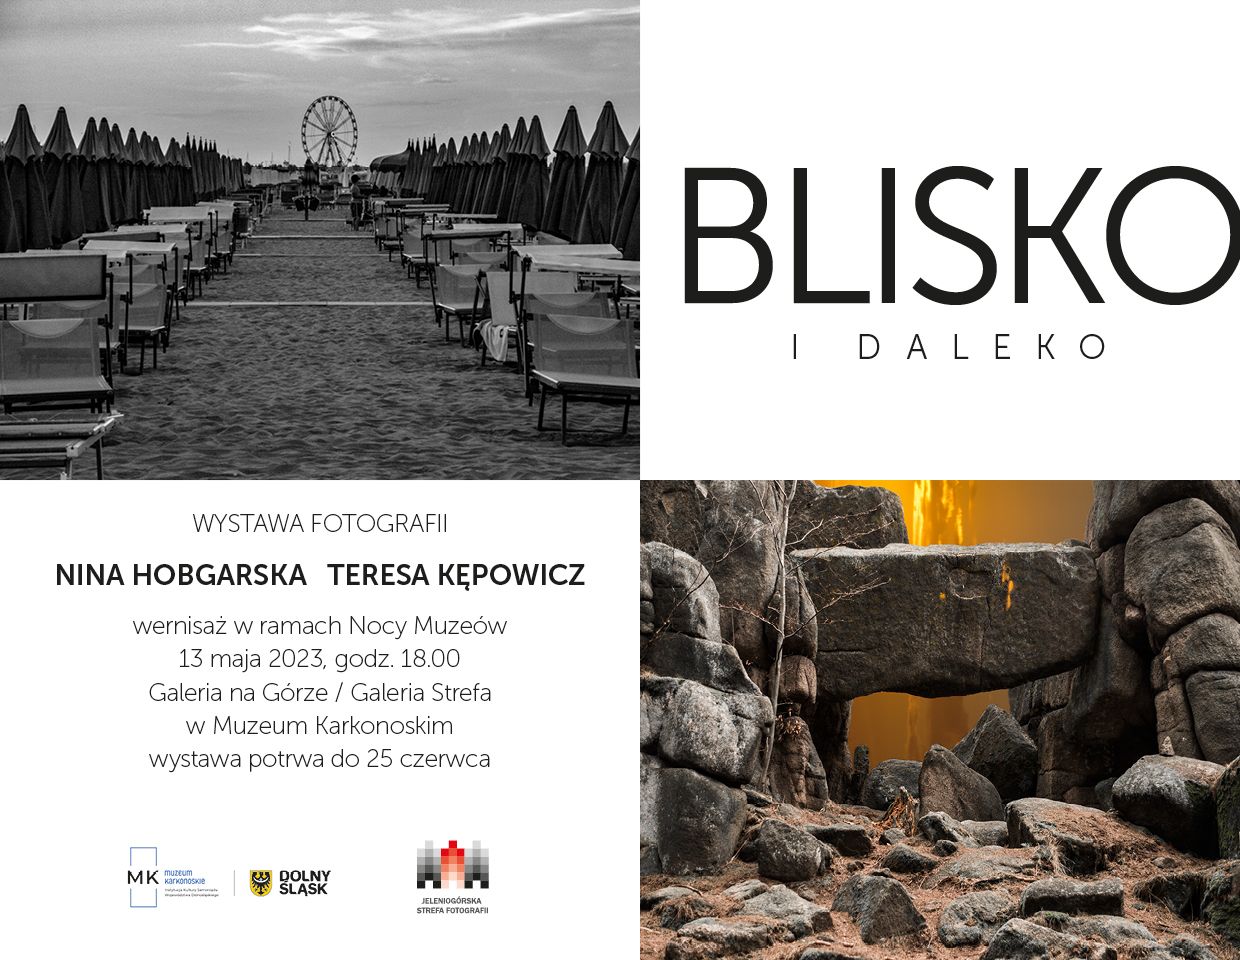 Jelenia Góra: Blisko i daleko – wernisaż wystawy fotografii w sobotę